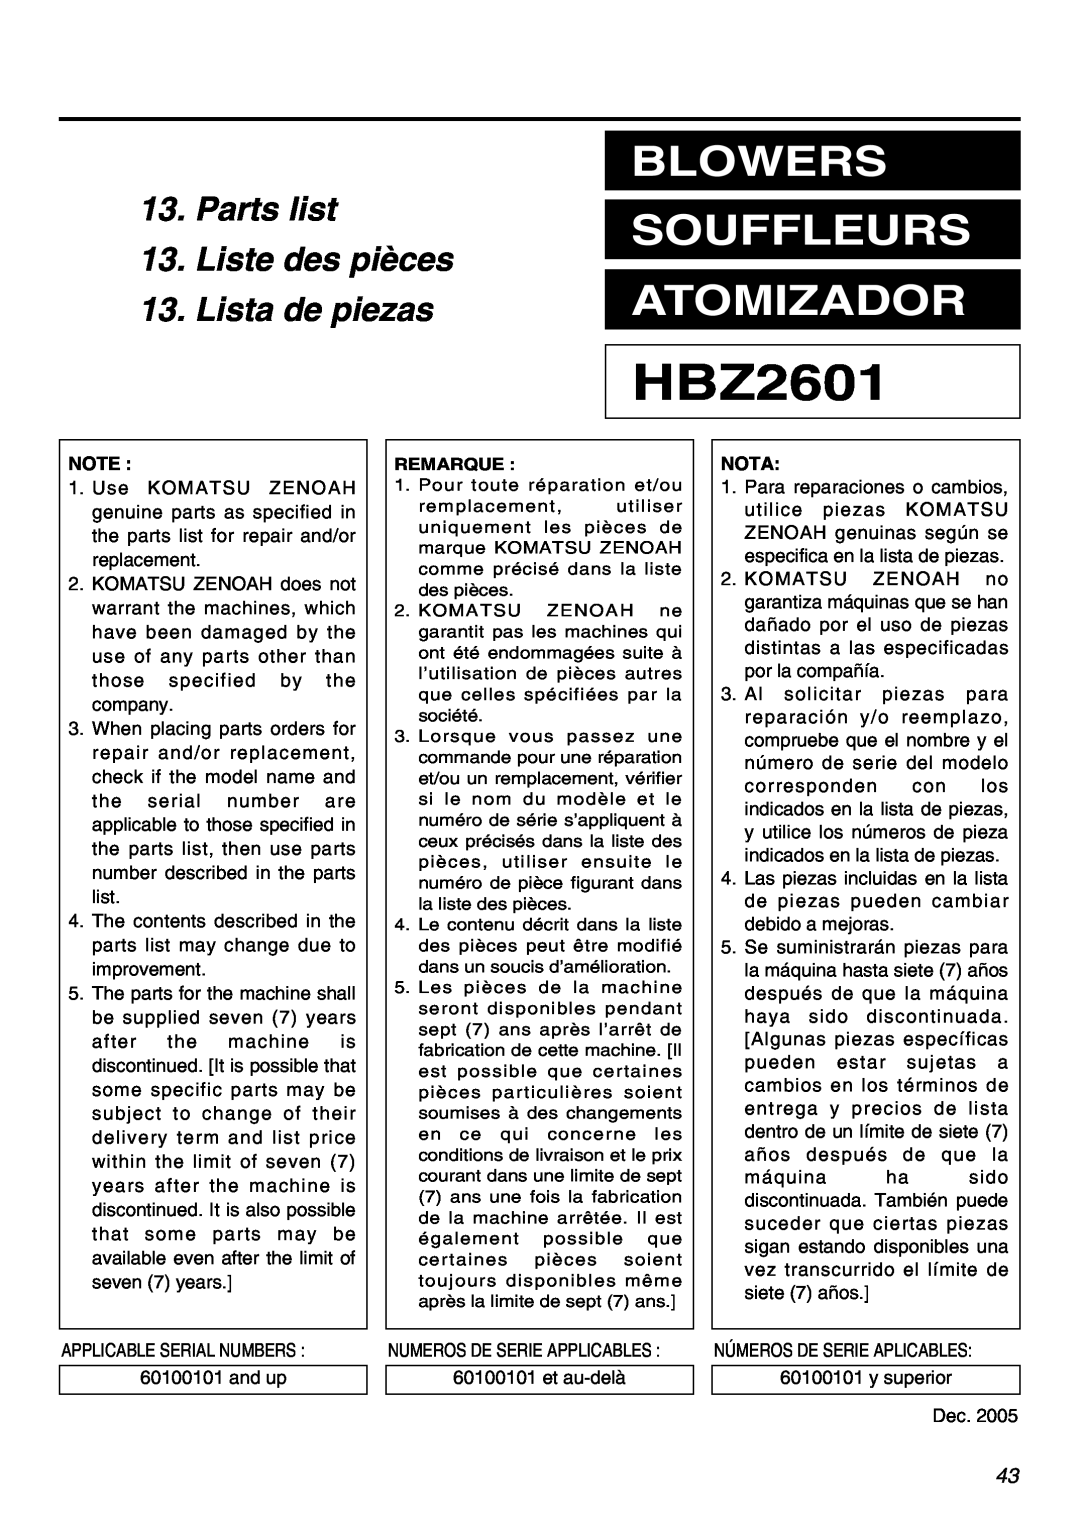 RedMax HBZ2601 manual Parts list 13.Liste des pièces, Lista de piezas, Blowers Souffleurs Atomizador, Nota 